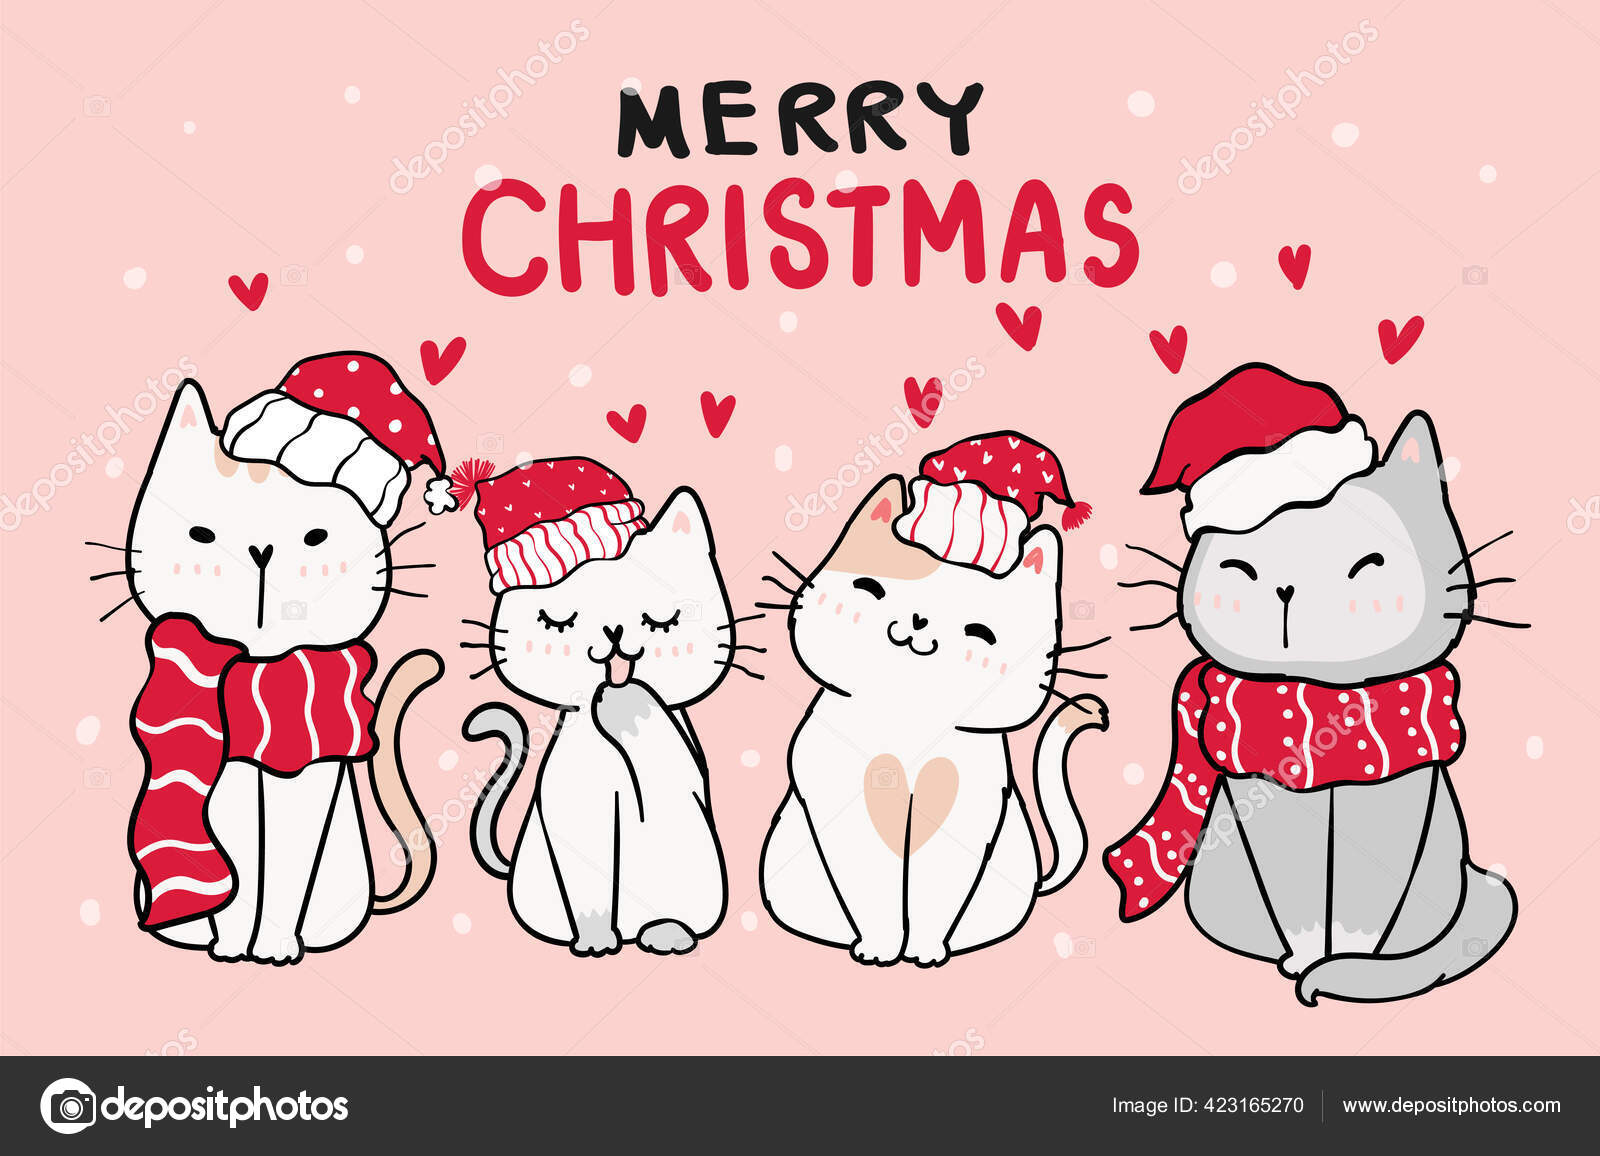 Mũ đỏ, kẹp cổ, mèo con, giáng sinh, tuyết - Bạn đã sẵn sàng để đón Giáng sinh chưa? Hãy xem bức ảnh này với mũ đỏ và kẹp cổ thật đáng yêu, kèm theo chú mèo con xinh xắn với tuyết trắng xóa phủ khắp nơi. Chắc chắn bạn sẽ cảm thấy ấm áp trong mùa lễ hội này.